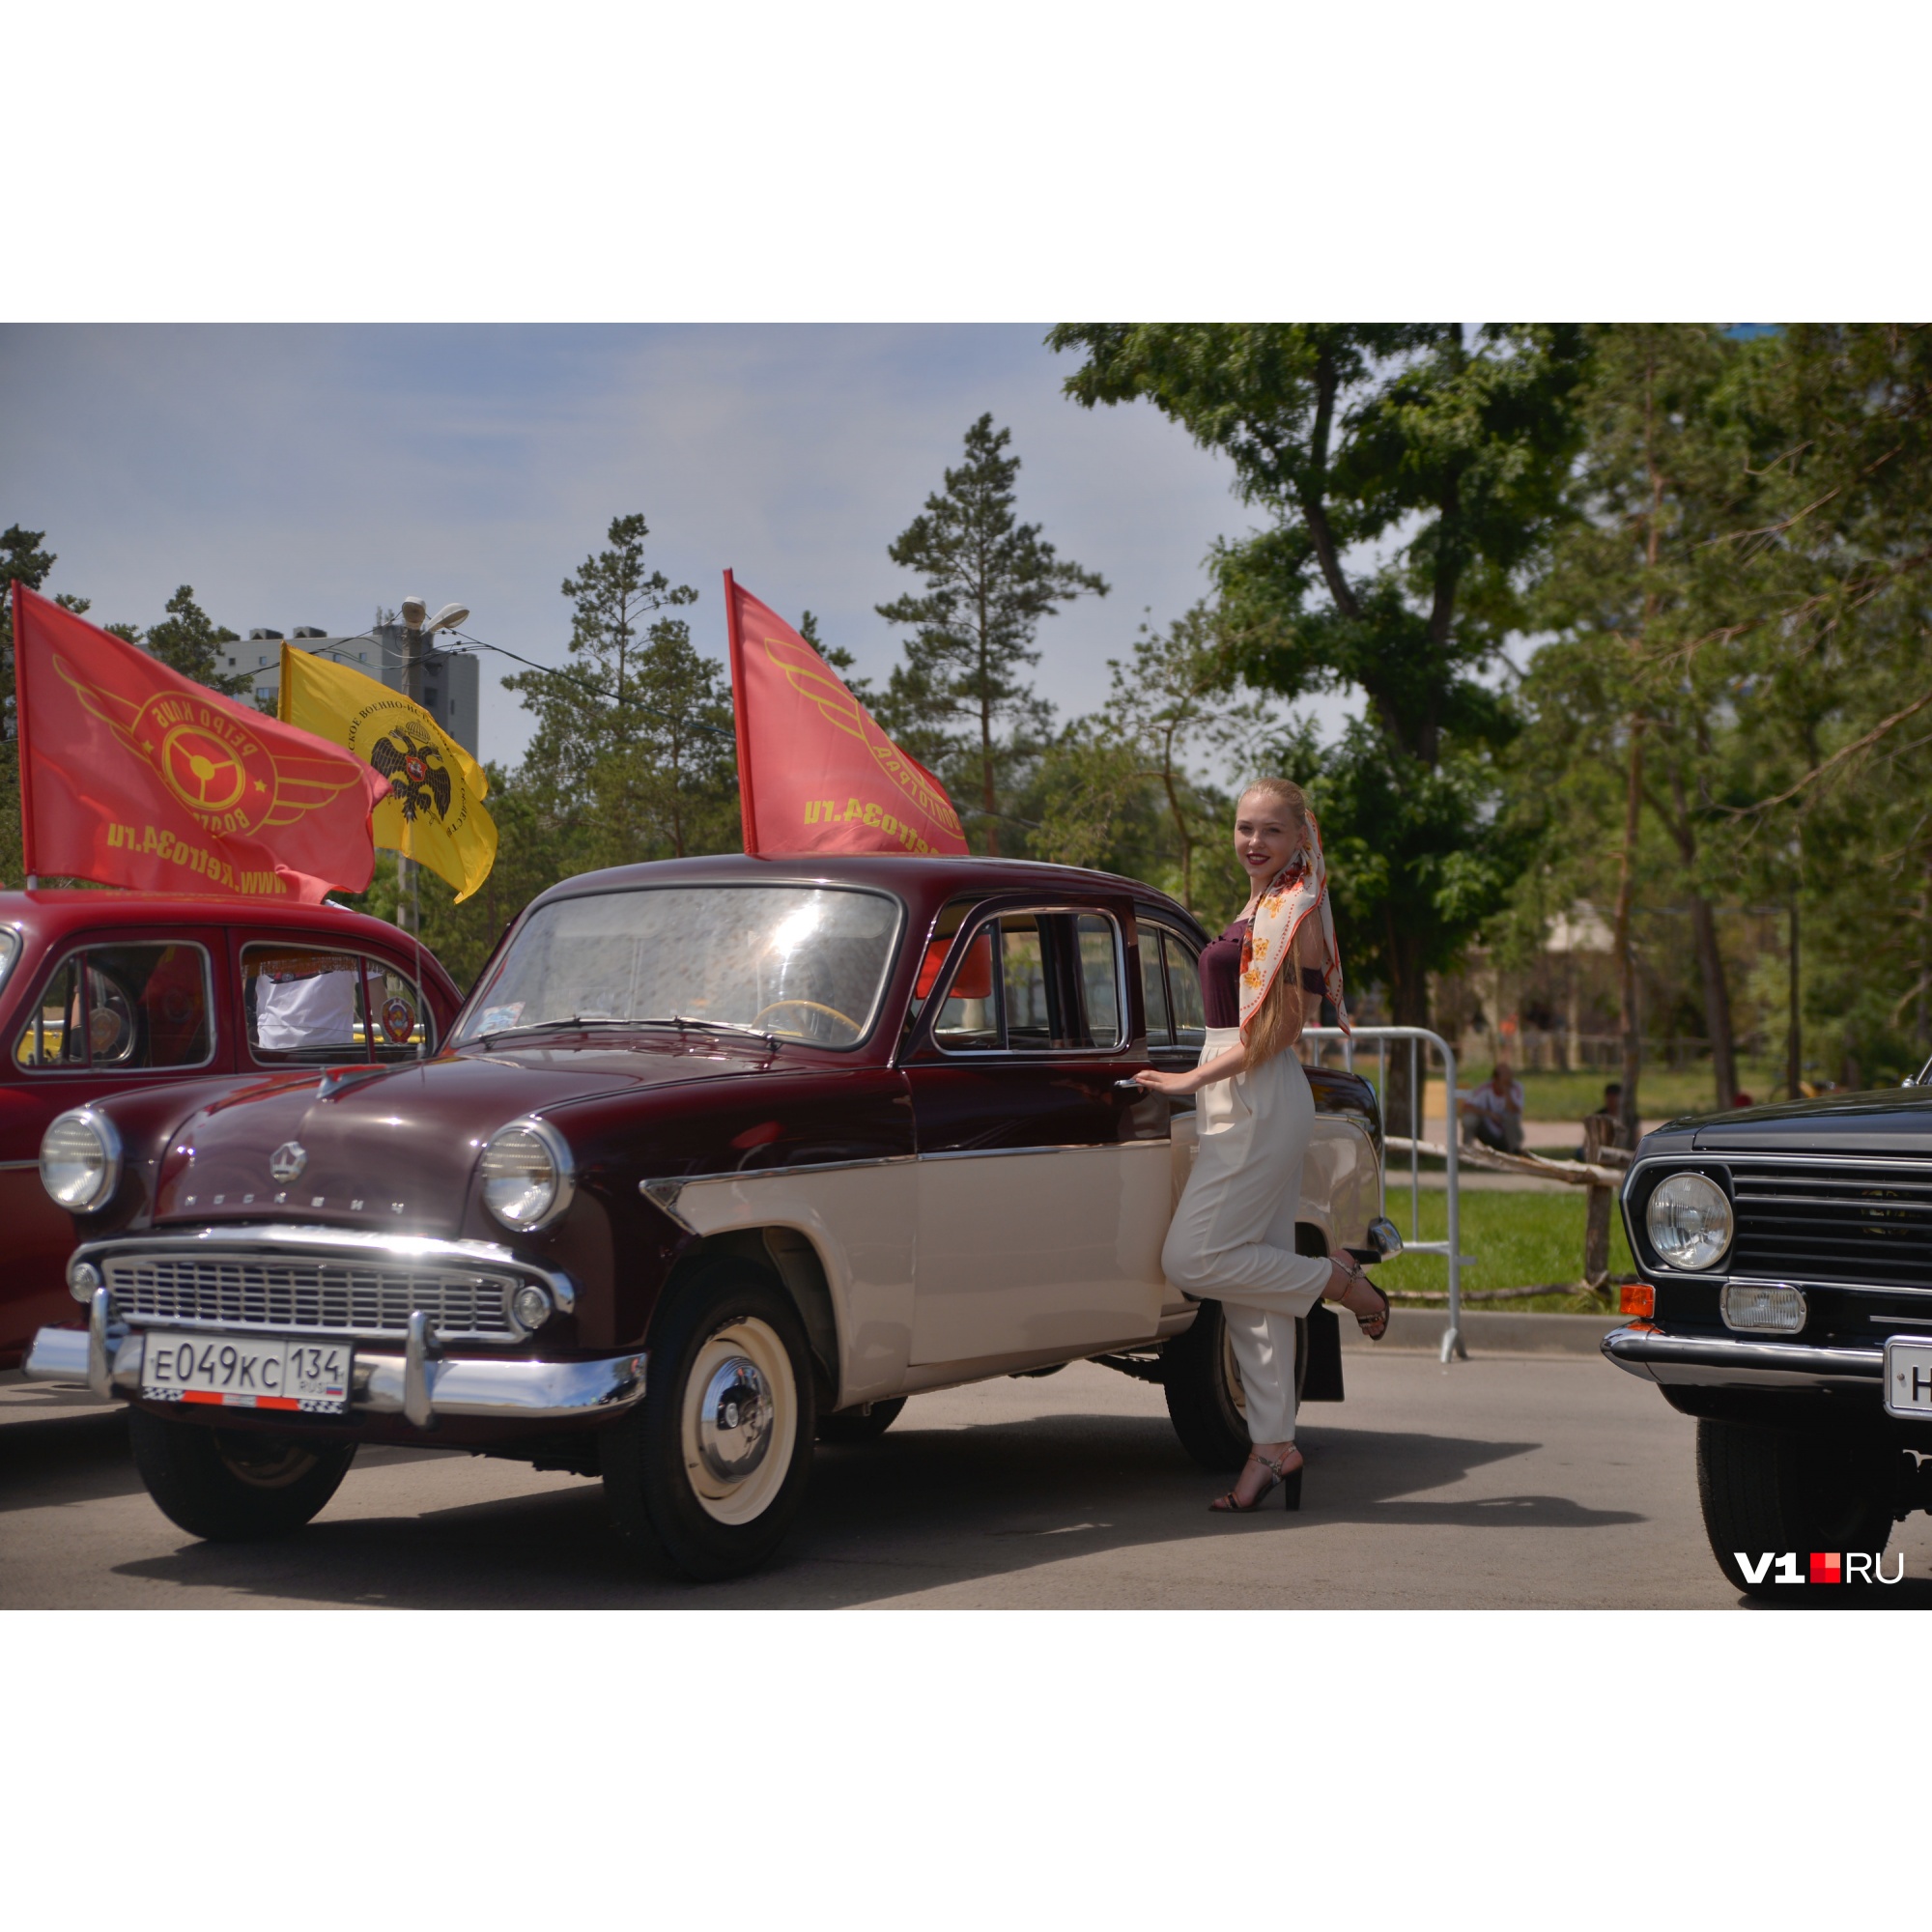 «Девчонкам не доверяю»: в Волгограде на солнцепеке устроили парад советских машин